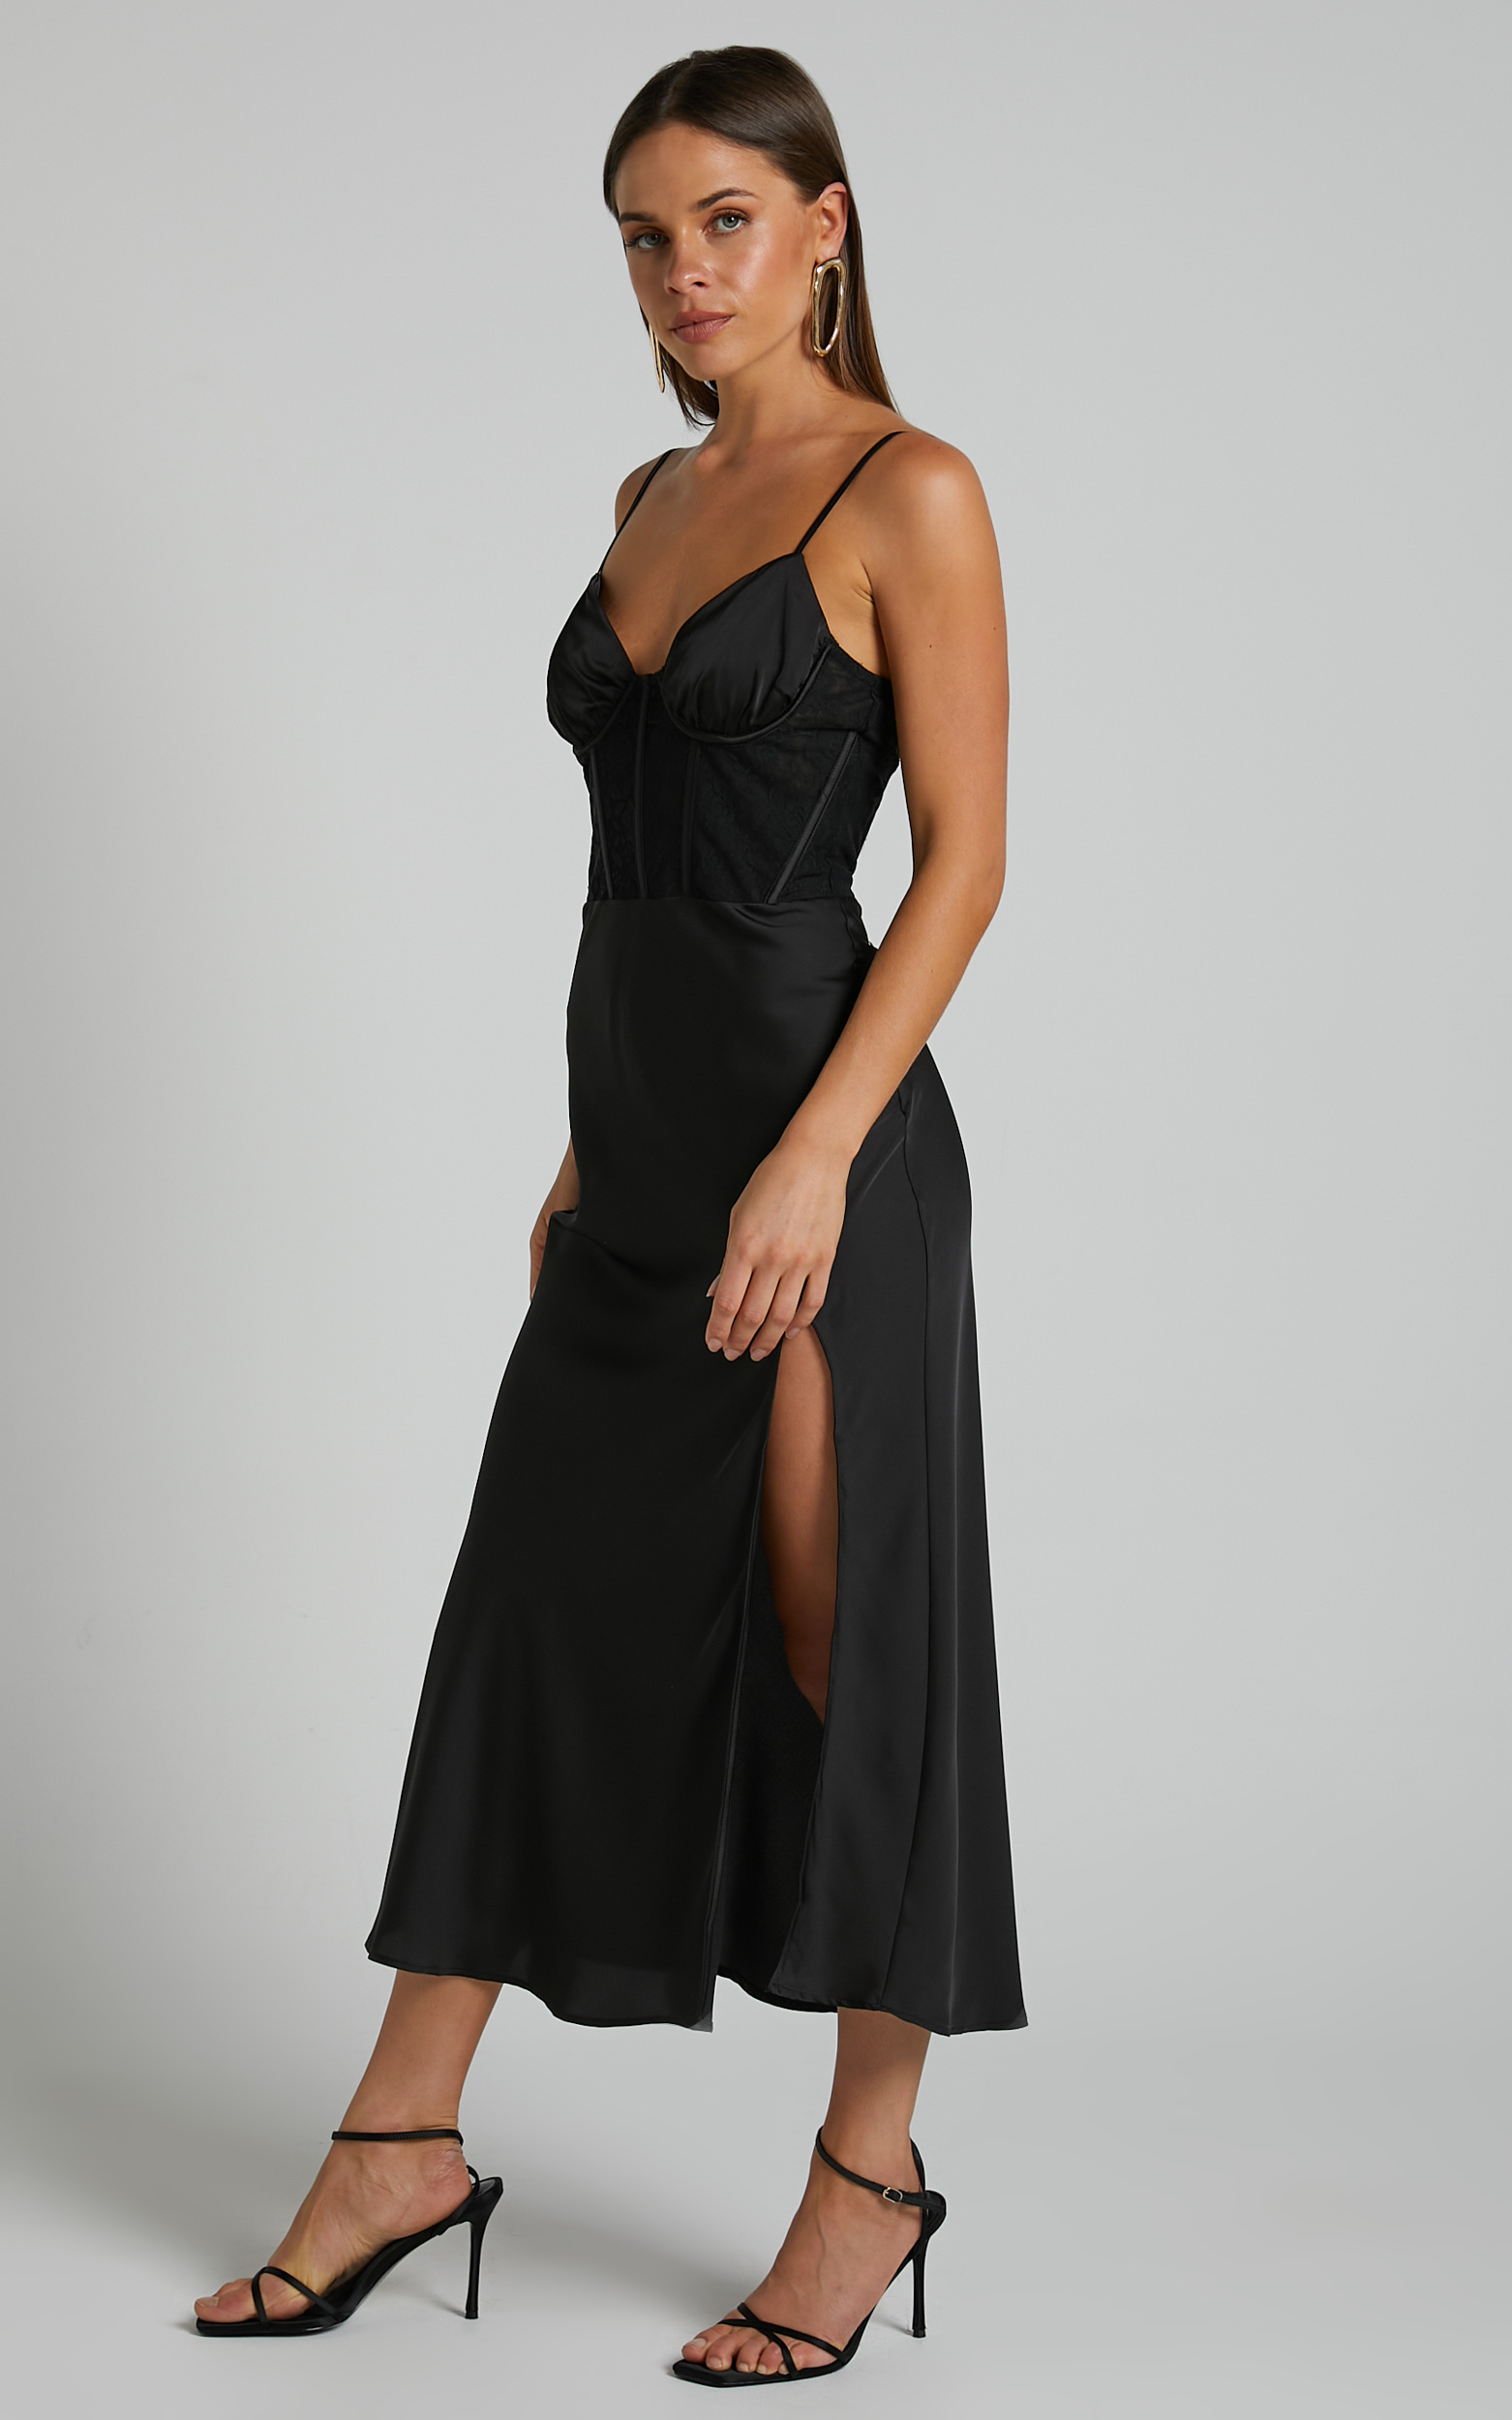 Khallah Midi Dress - Lace Bustier Side Split Dress in Black | Showpo